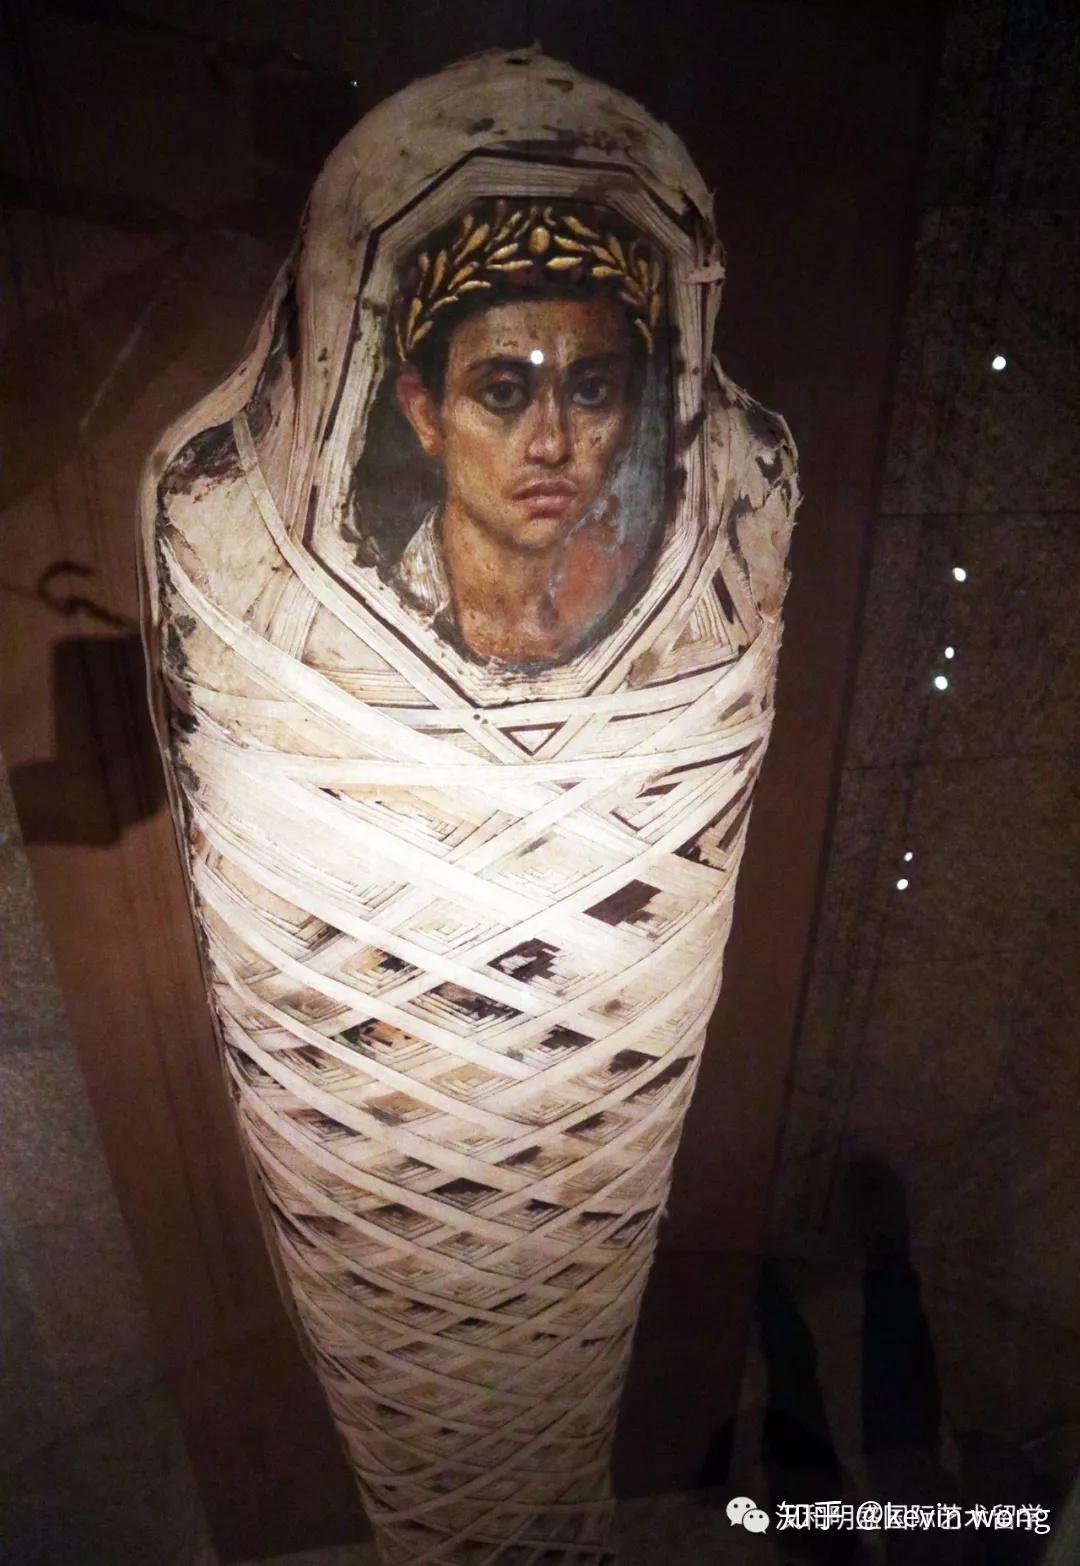 遇见古埃及·黄金木乃伊展5 古埃及木乃伊面具、画像、动物和这次展览的源起 - 知乎